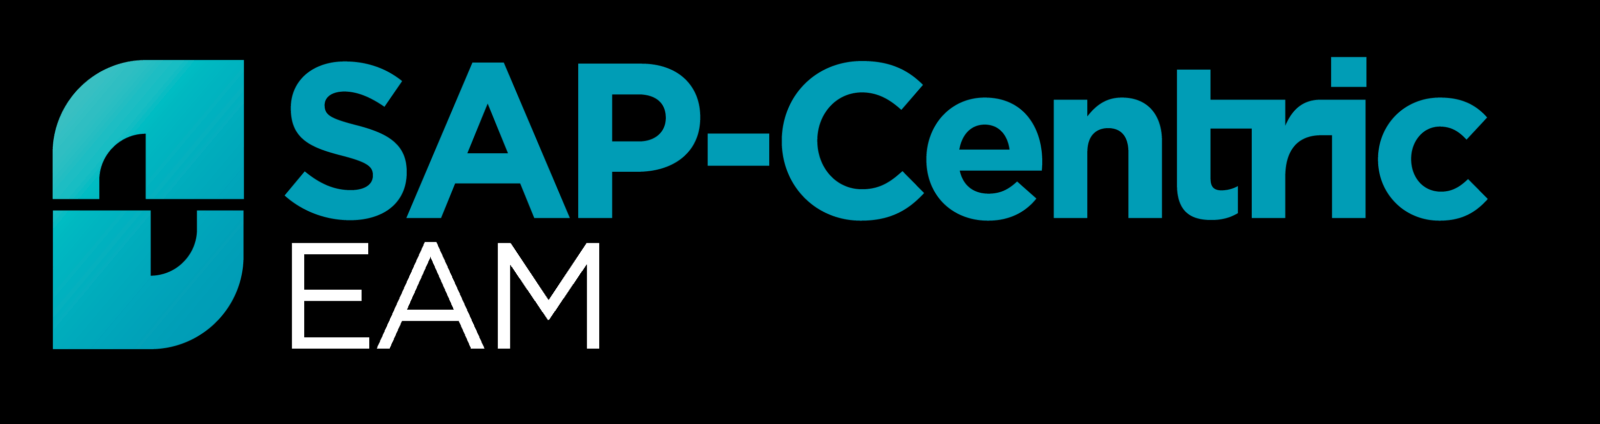 EAM Logo - SAP-Centric EAM